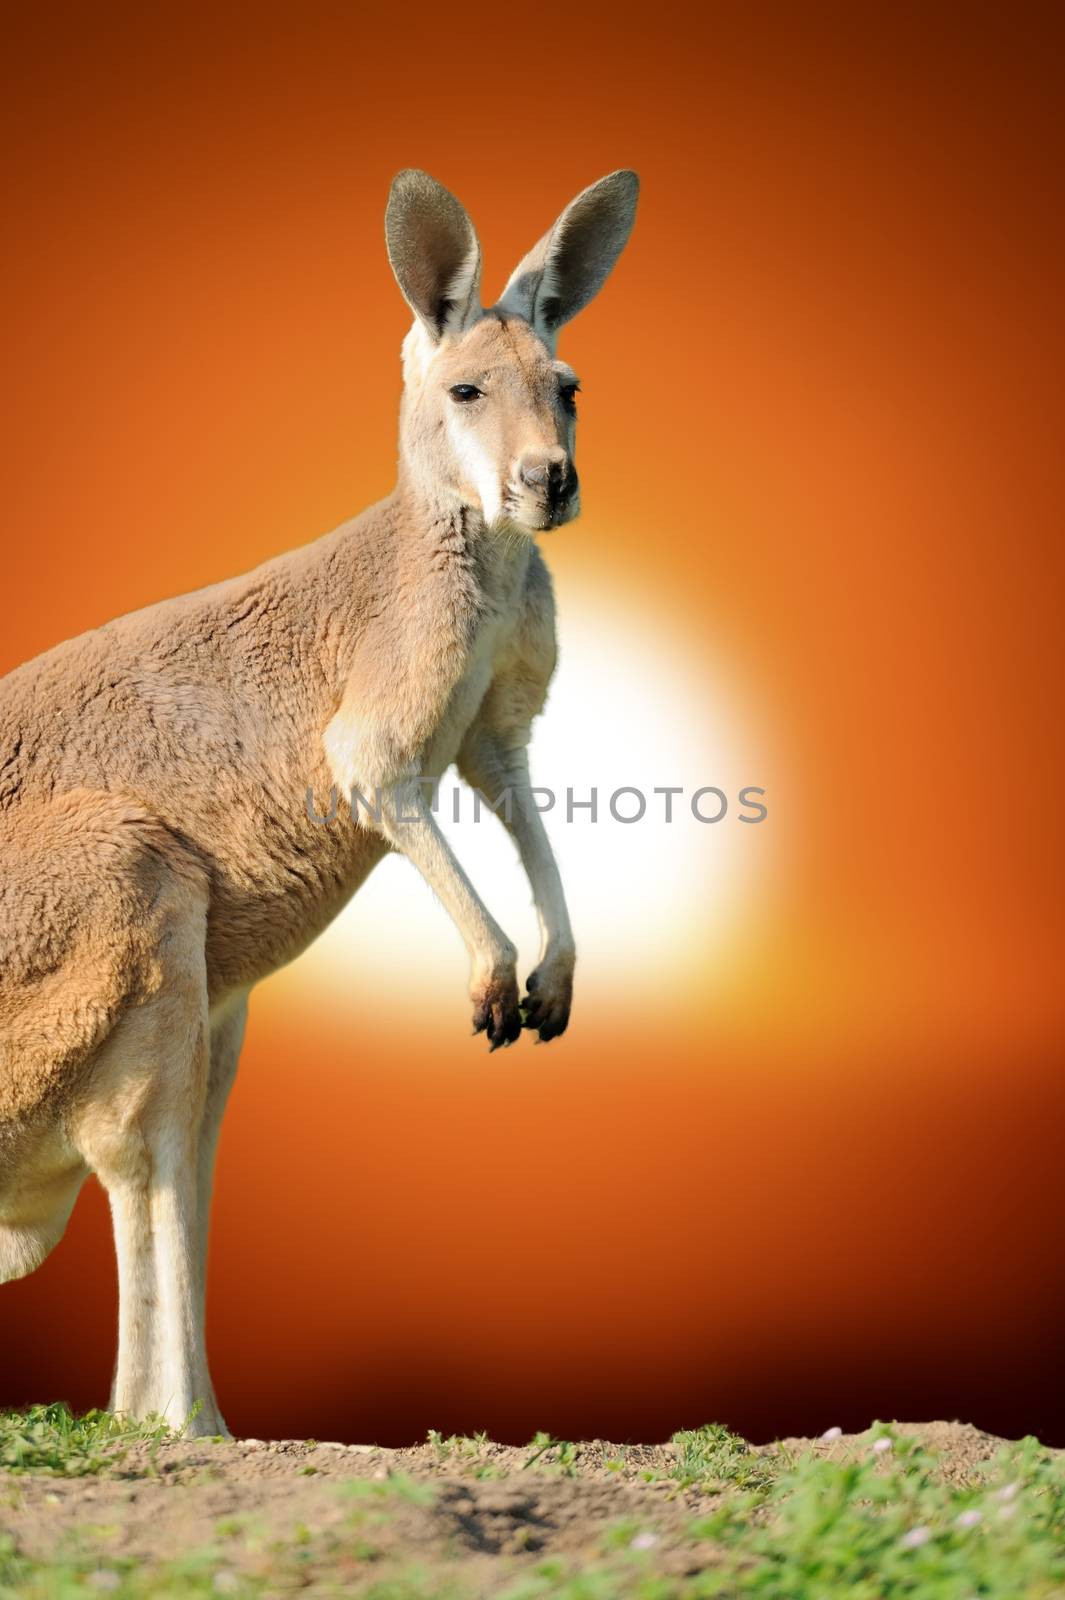 Kangaroo at sunset by byrdyak